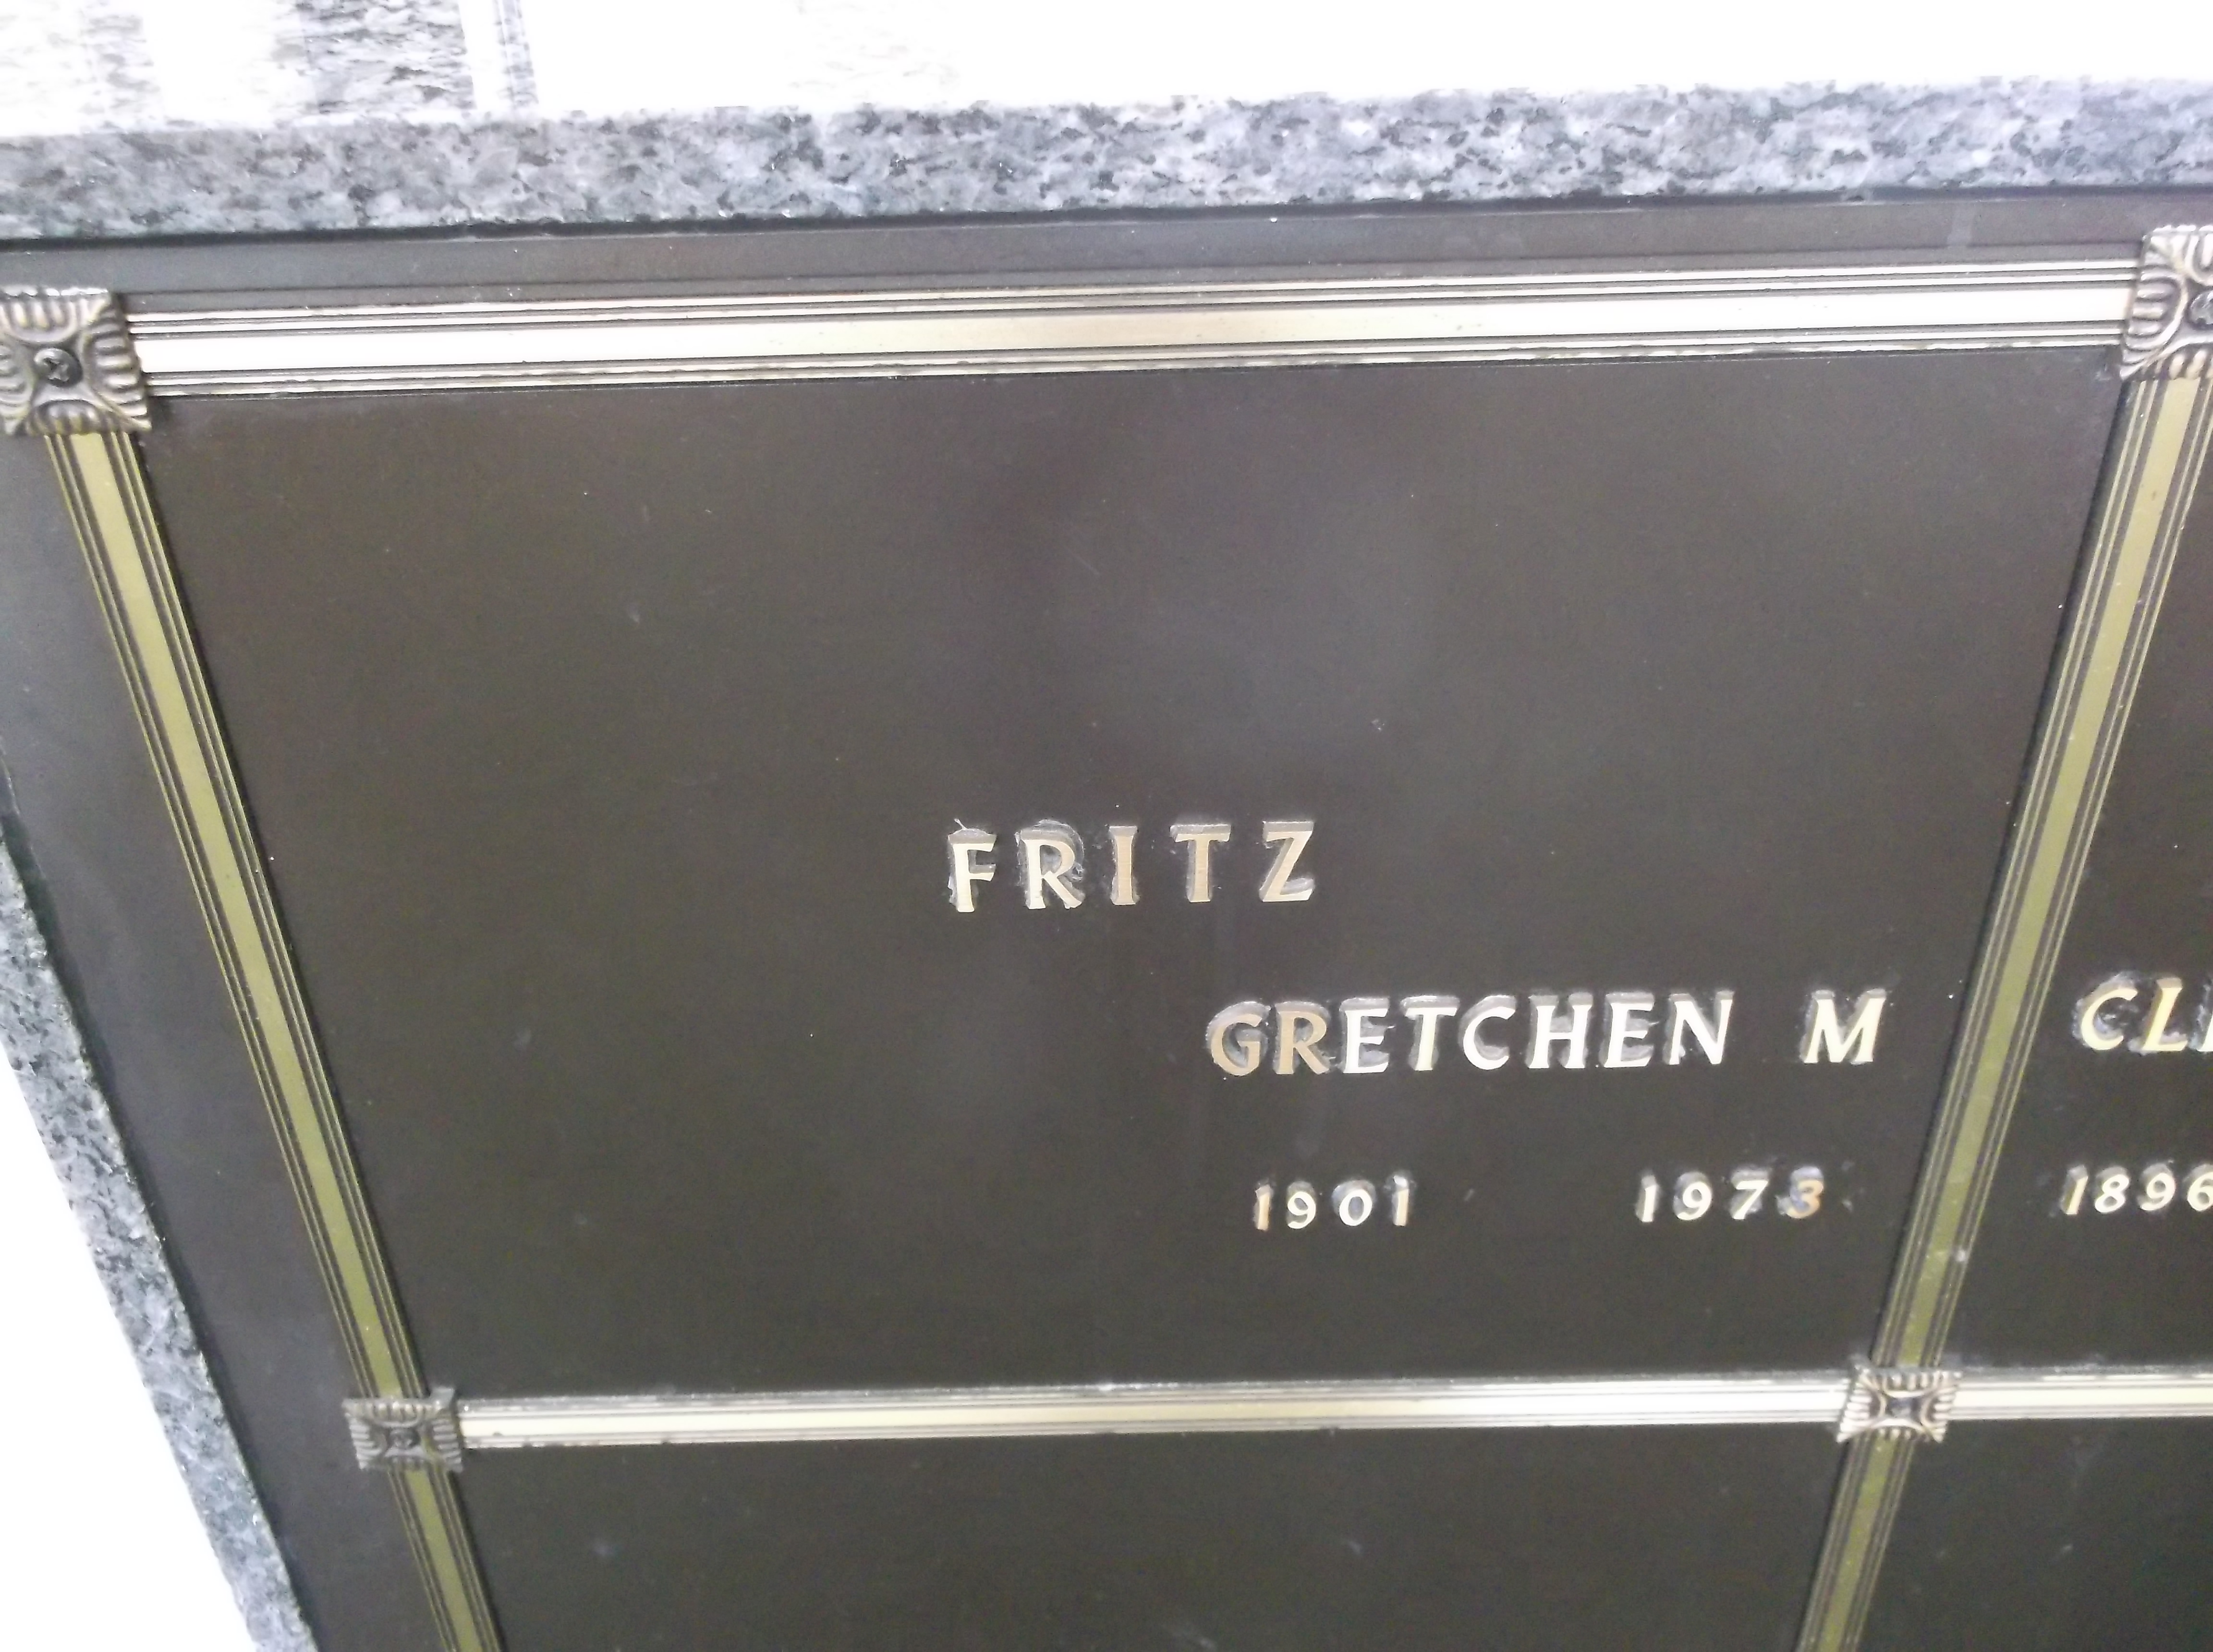 Gretchen M Fritz